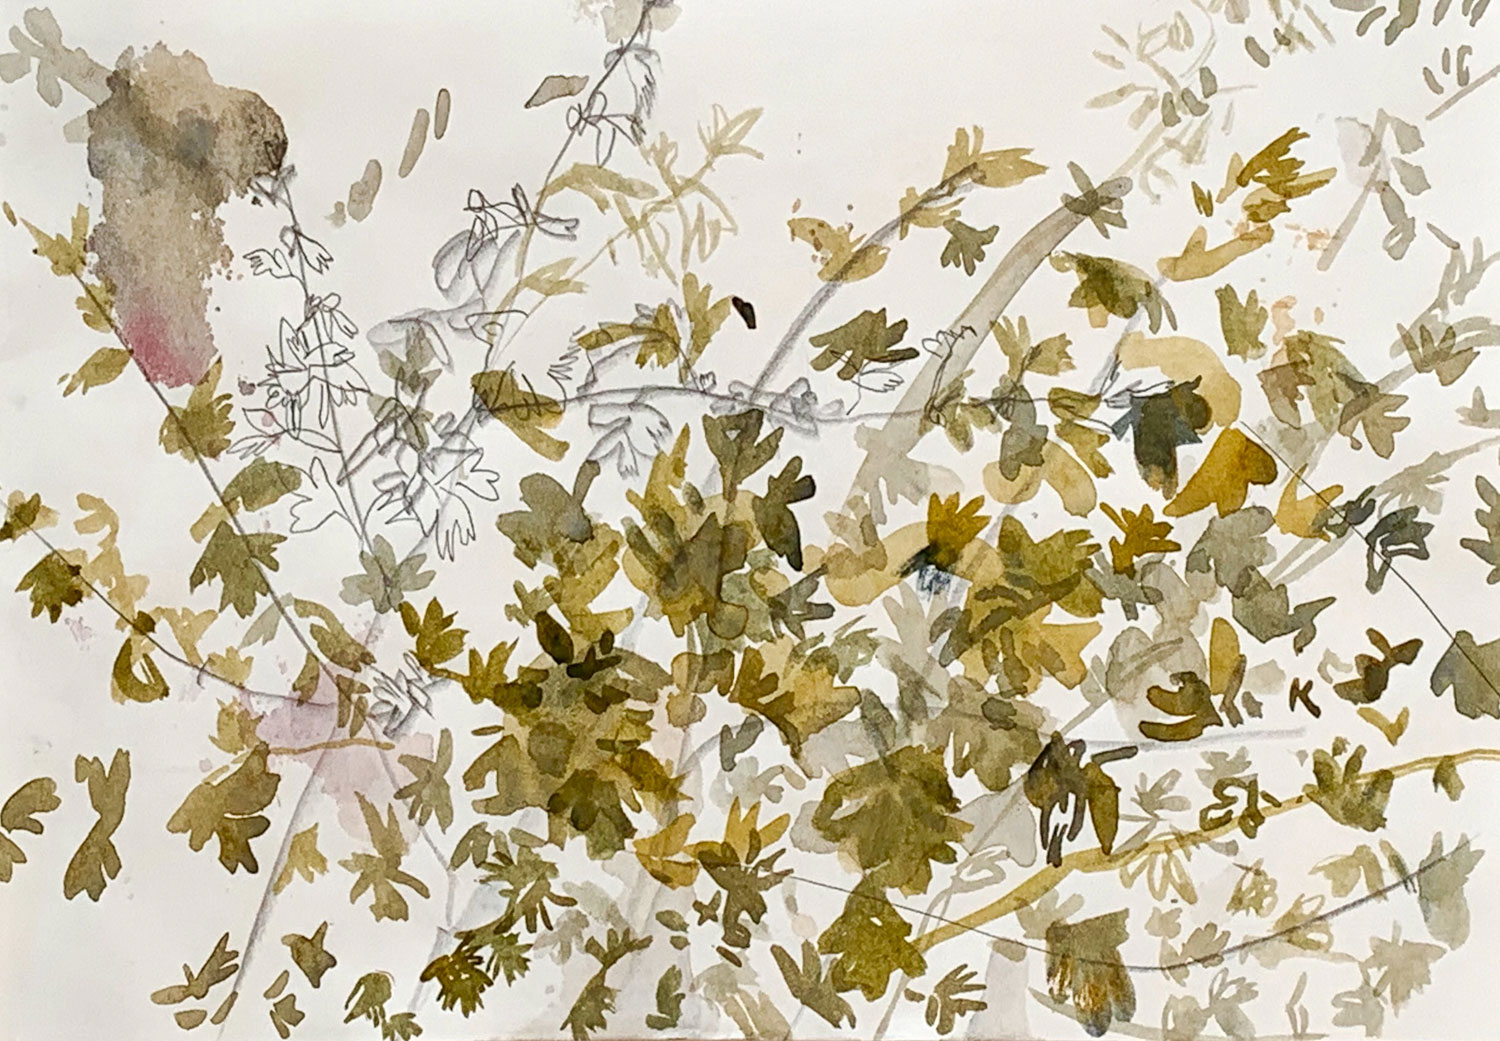 Lukas Gartiser - Untitled, 2020, Aquarell/Bleistift auf Papier, 21x29,5cm